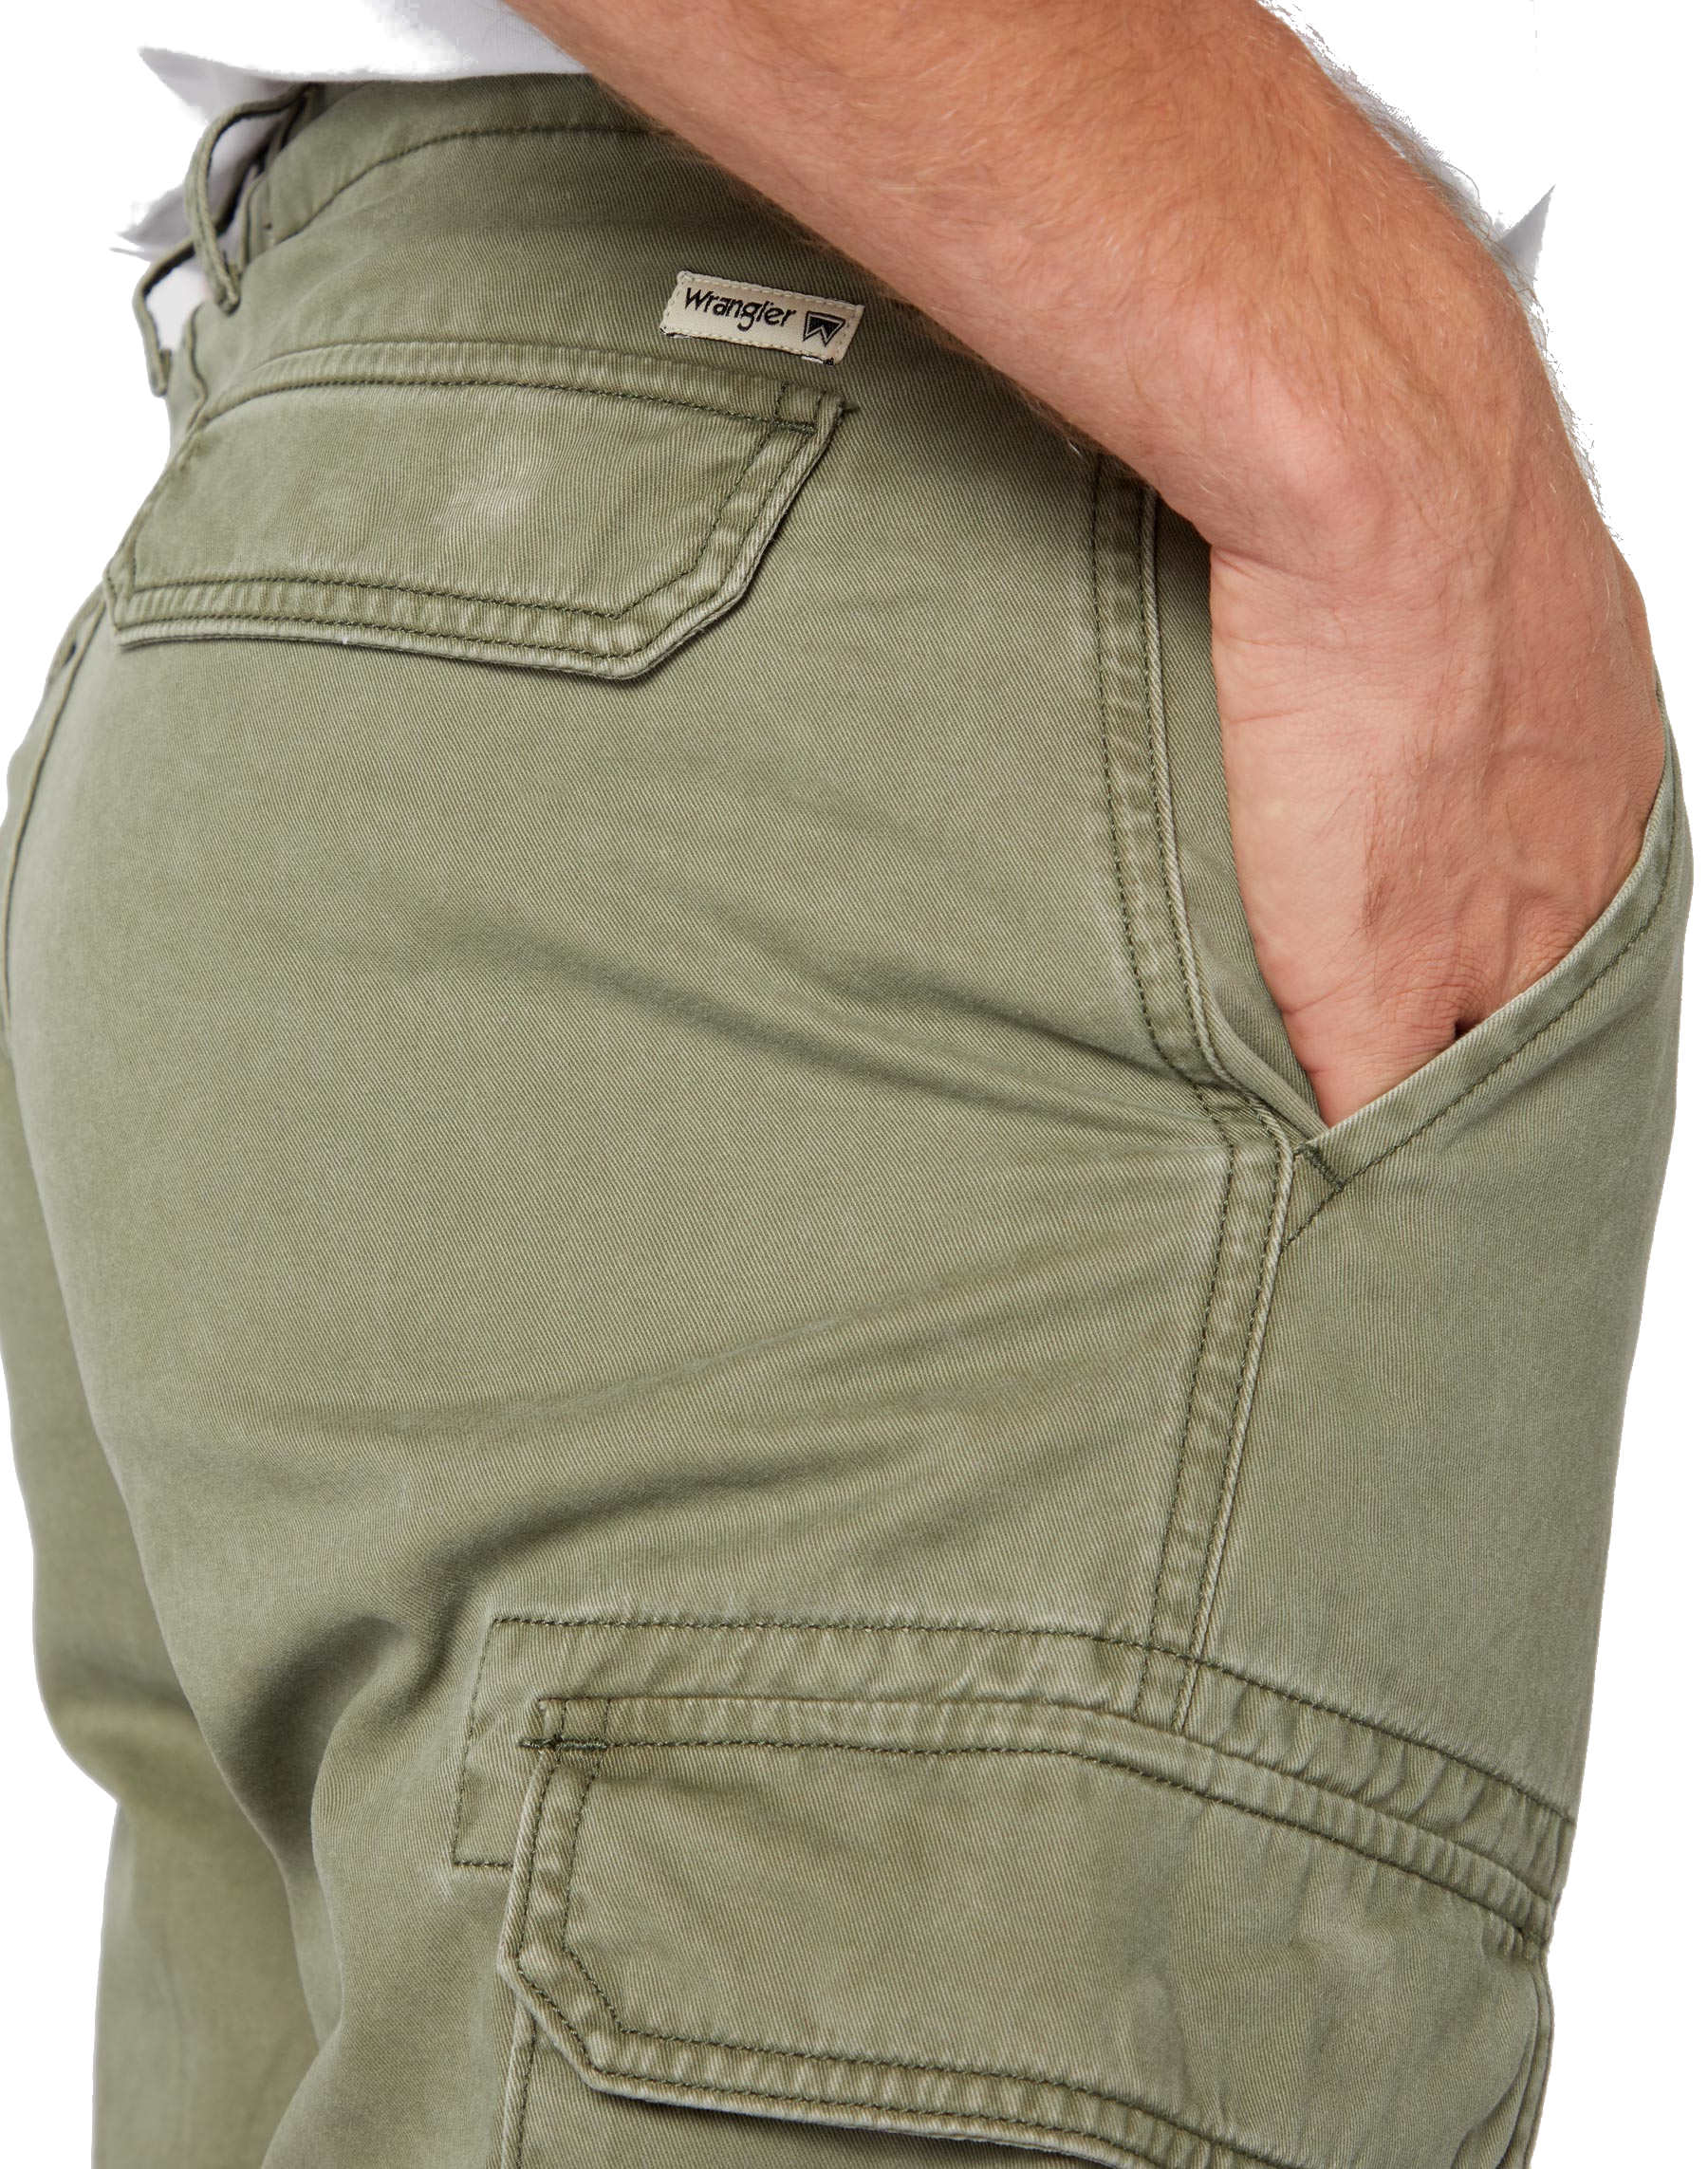 Wrangler Cargo Short aus 100% Baumwolle - Dusty Olive - Damen und Herren  Marken Jeans online kaufen